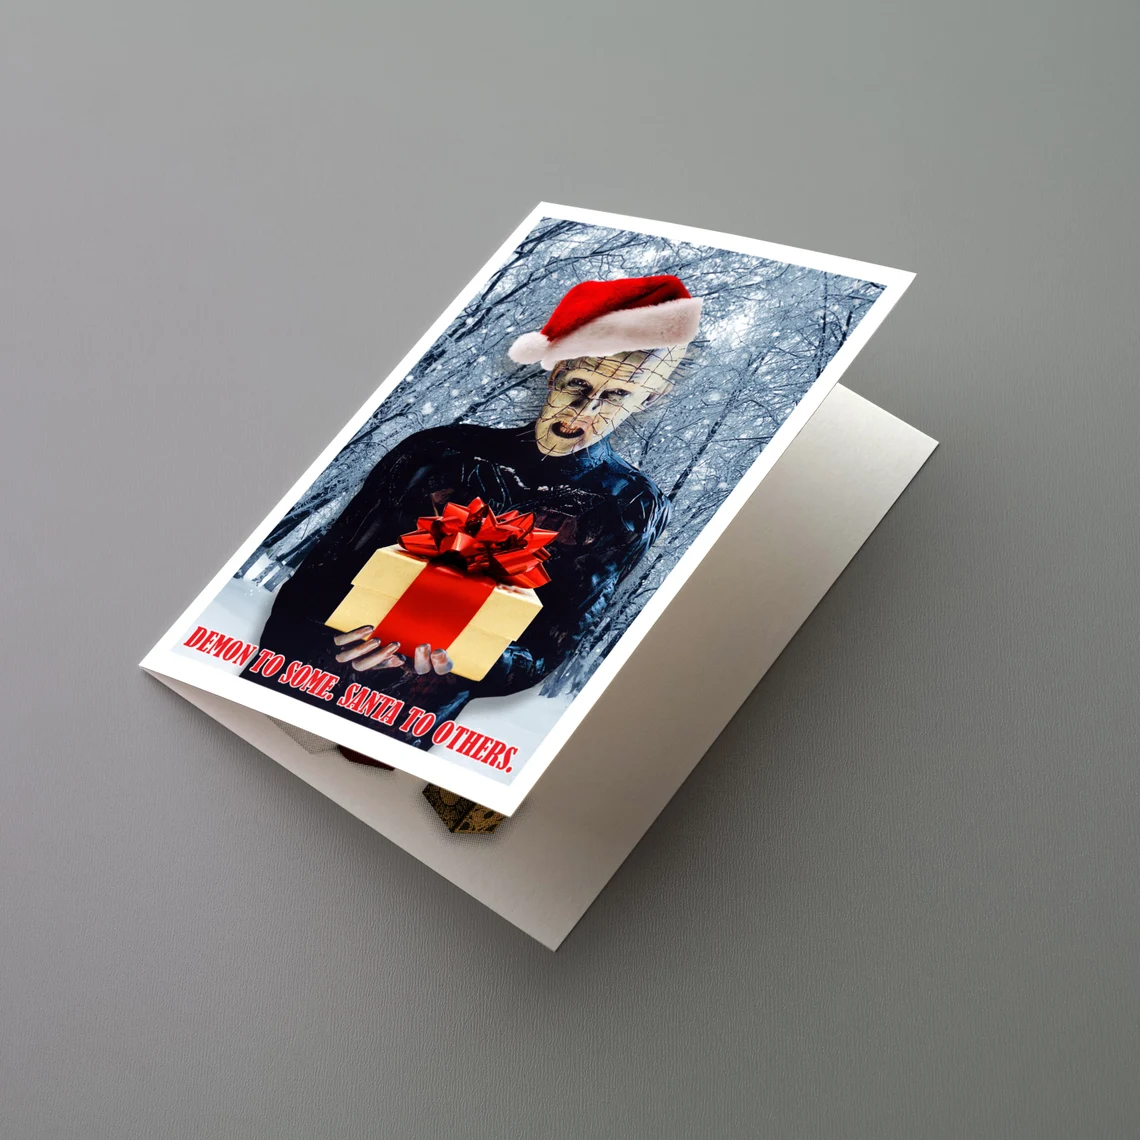 Pinhead (Hellraiser) Christmas Card